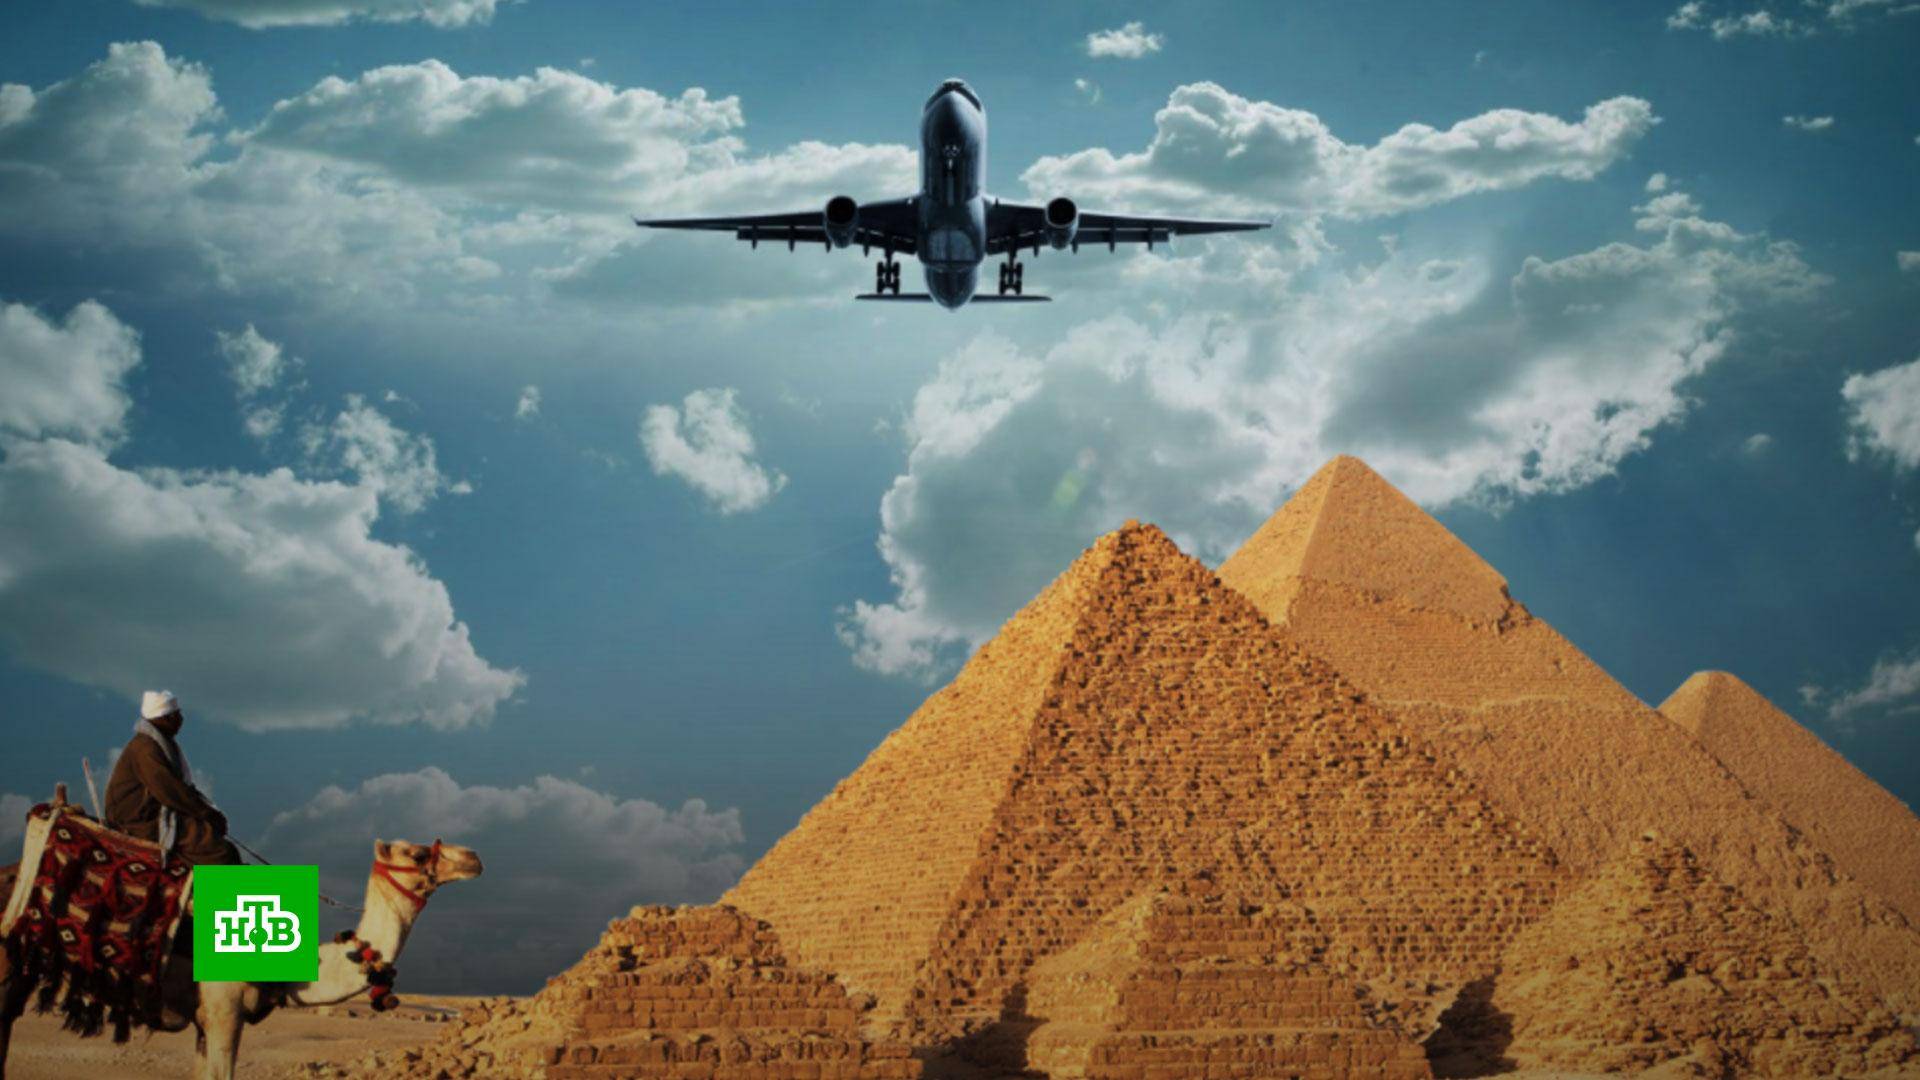 Открытие египта для туристов из россии: когда возобновятся полеты в шарм-эль-шейх и хургаду, последние новости